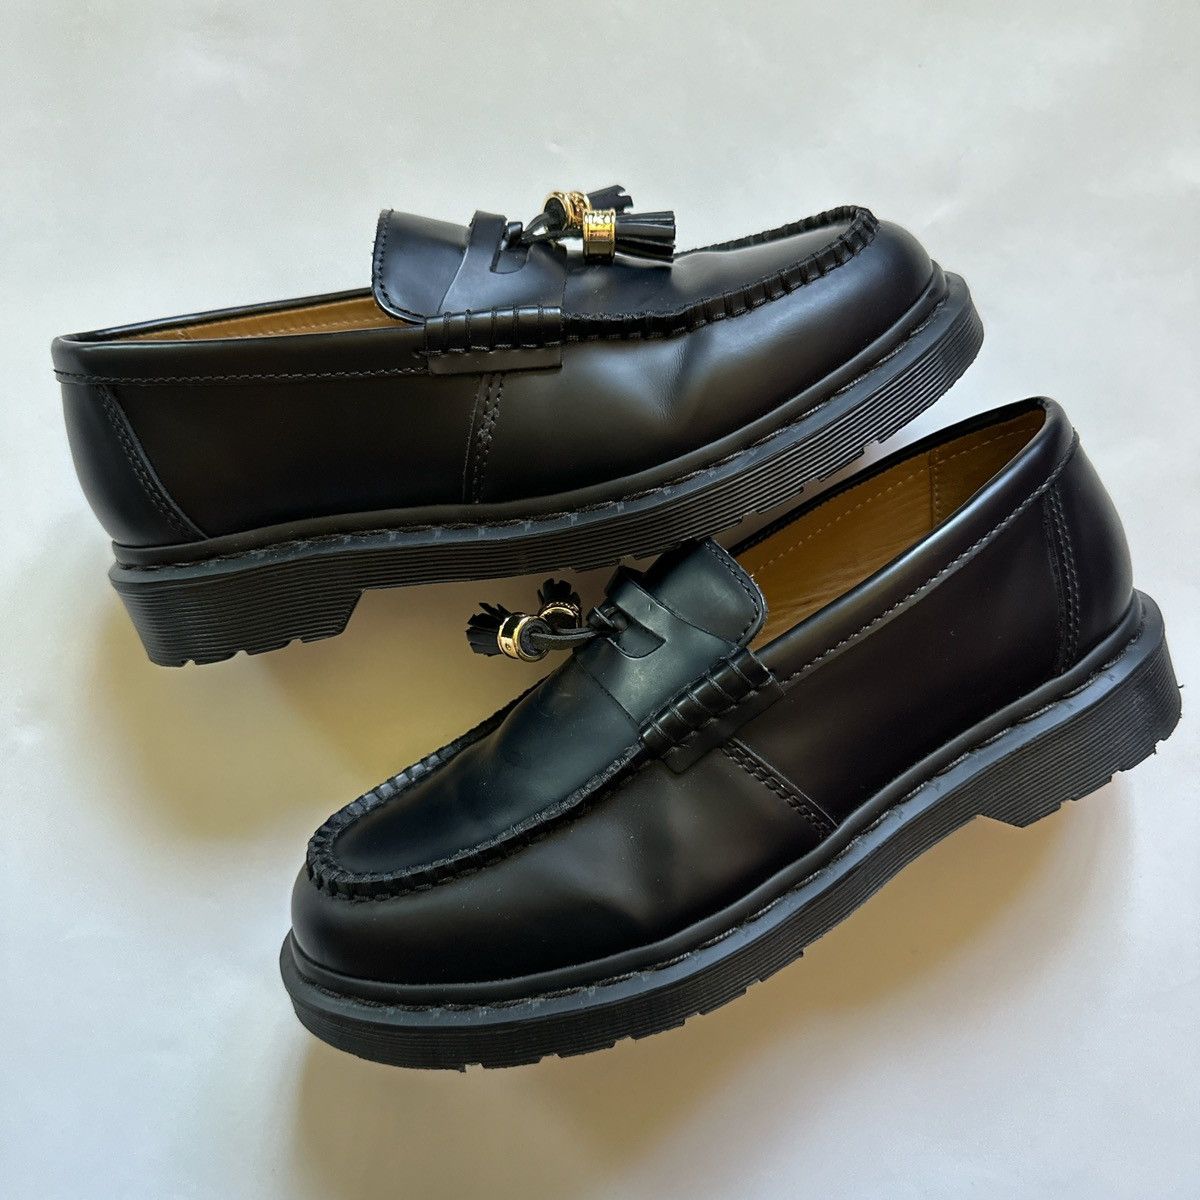 Supreme Supreme x Dr Martens - Penton tassel loafer Black US 8.0 | Grailed